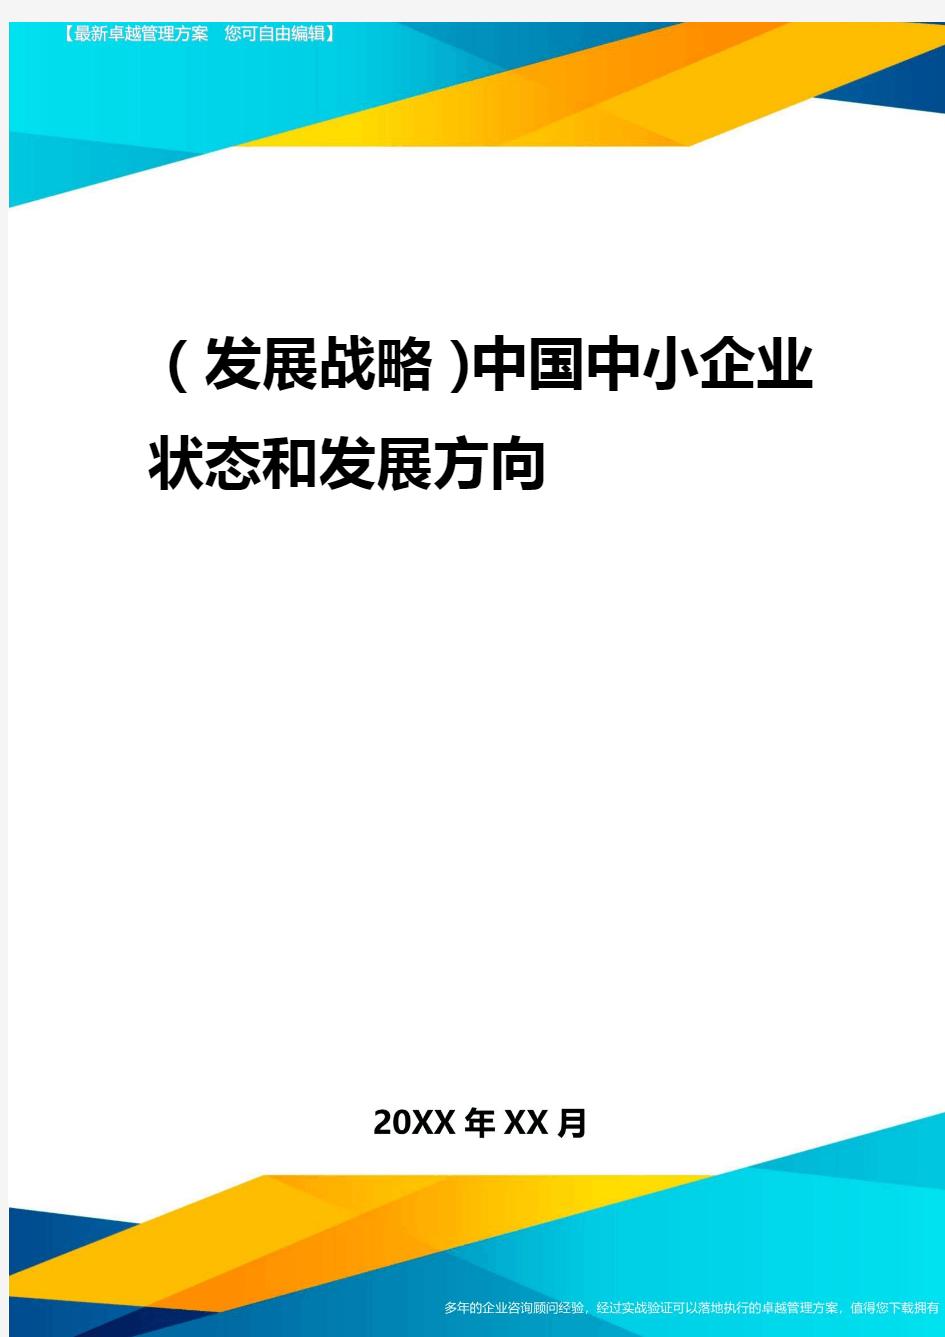 2020年(发展战略)中国中小企业状态与发展方向